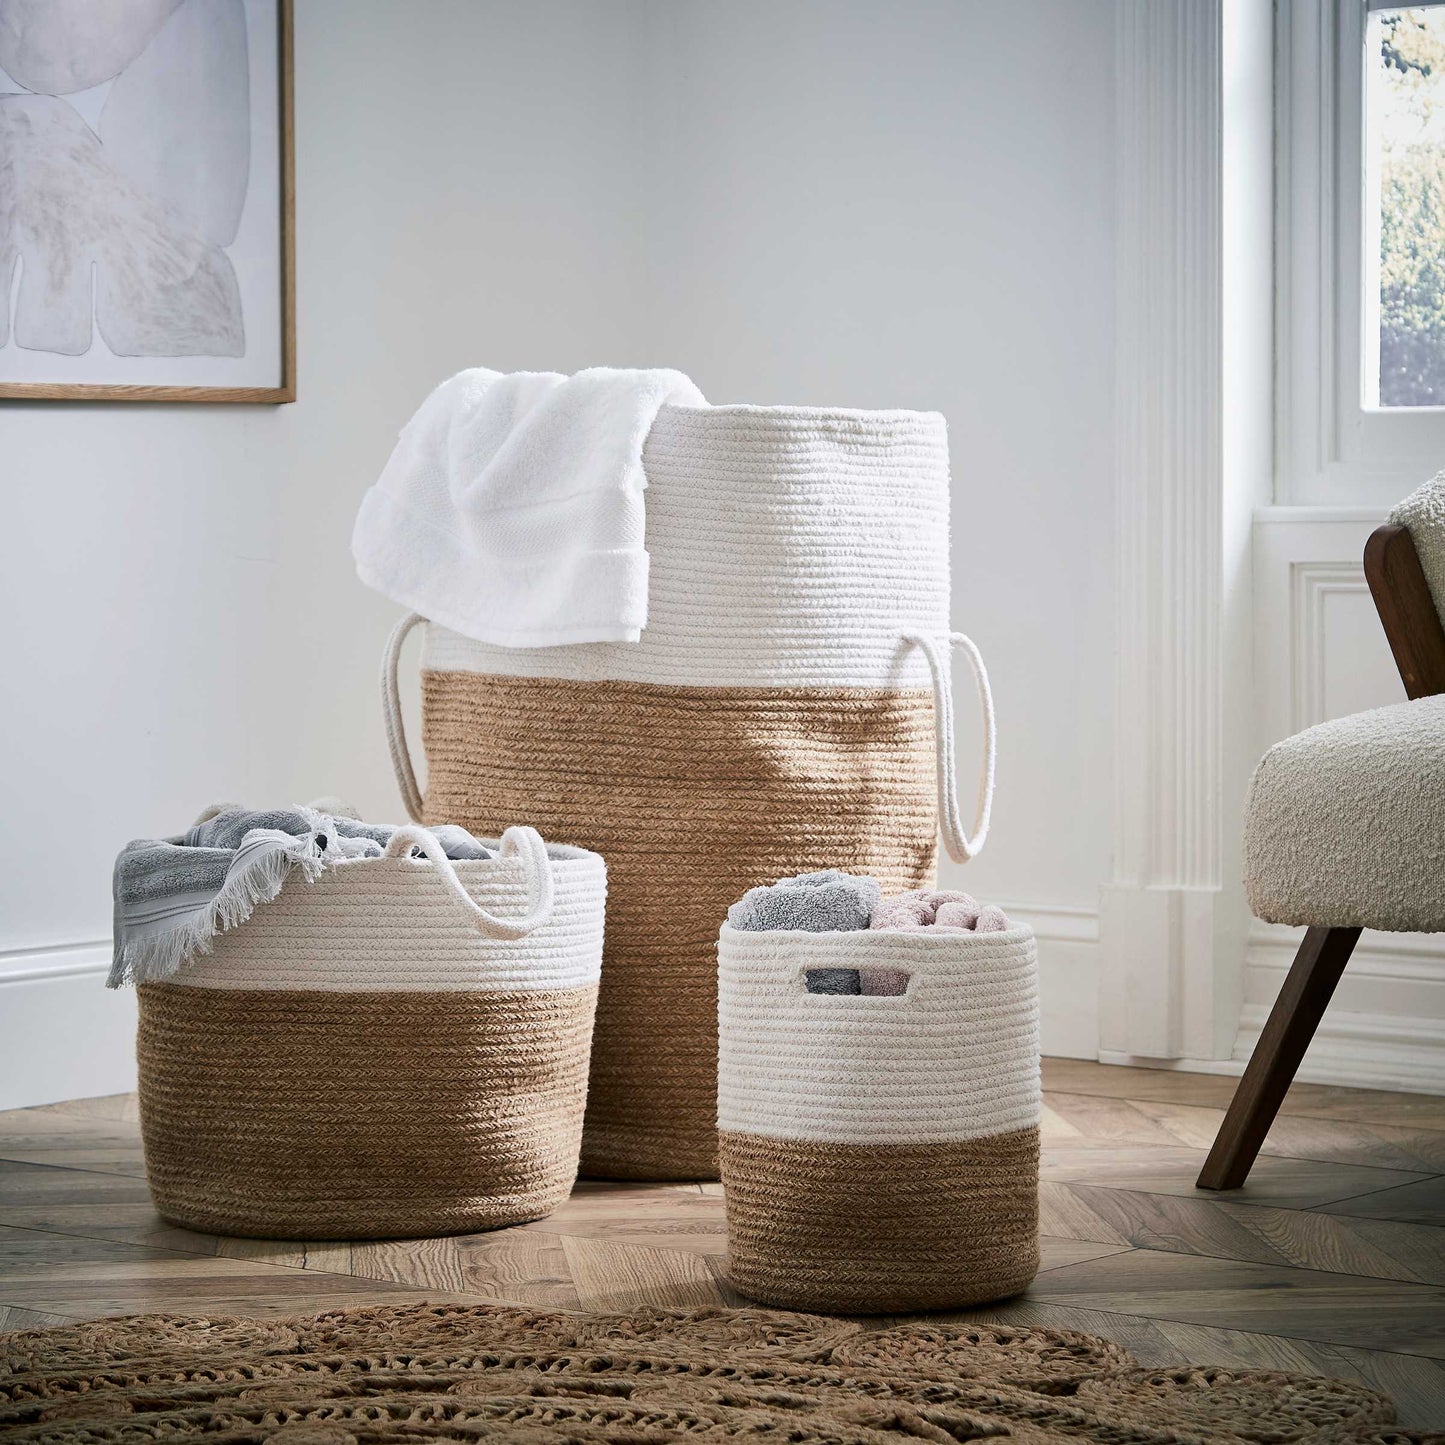 Storage Basket - Medium, Natural/White